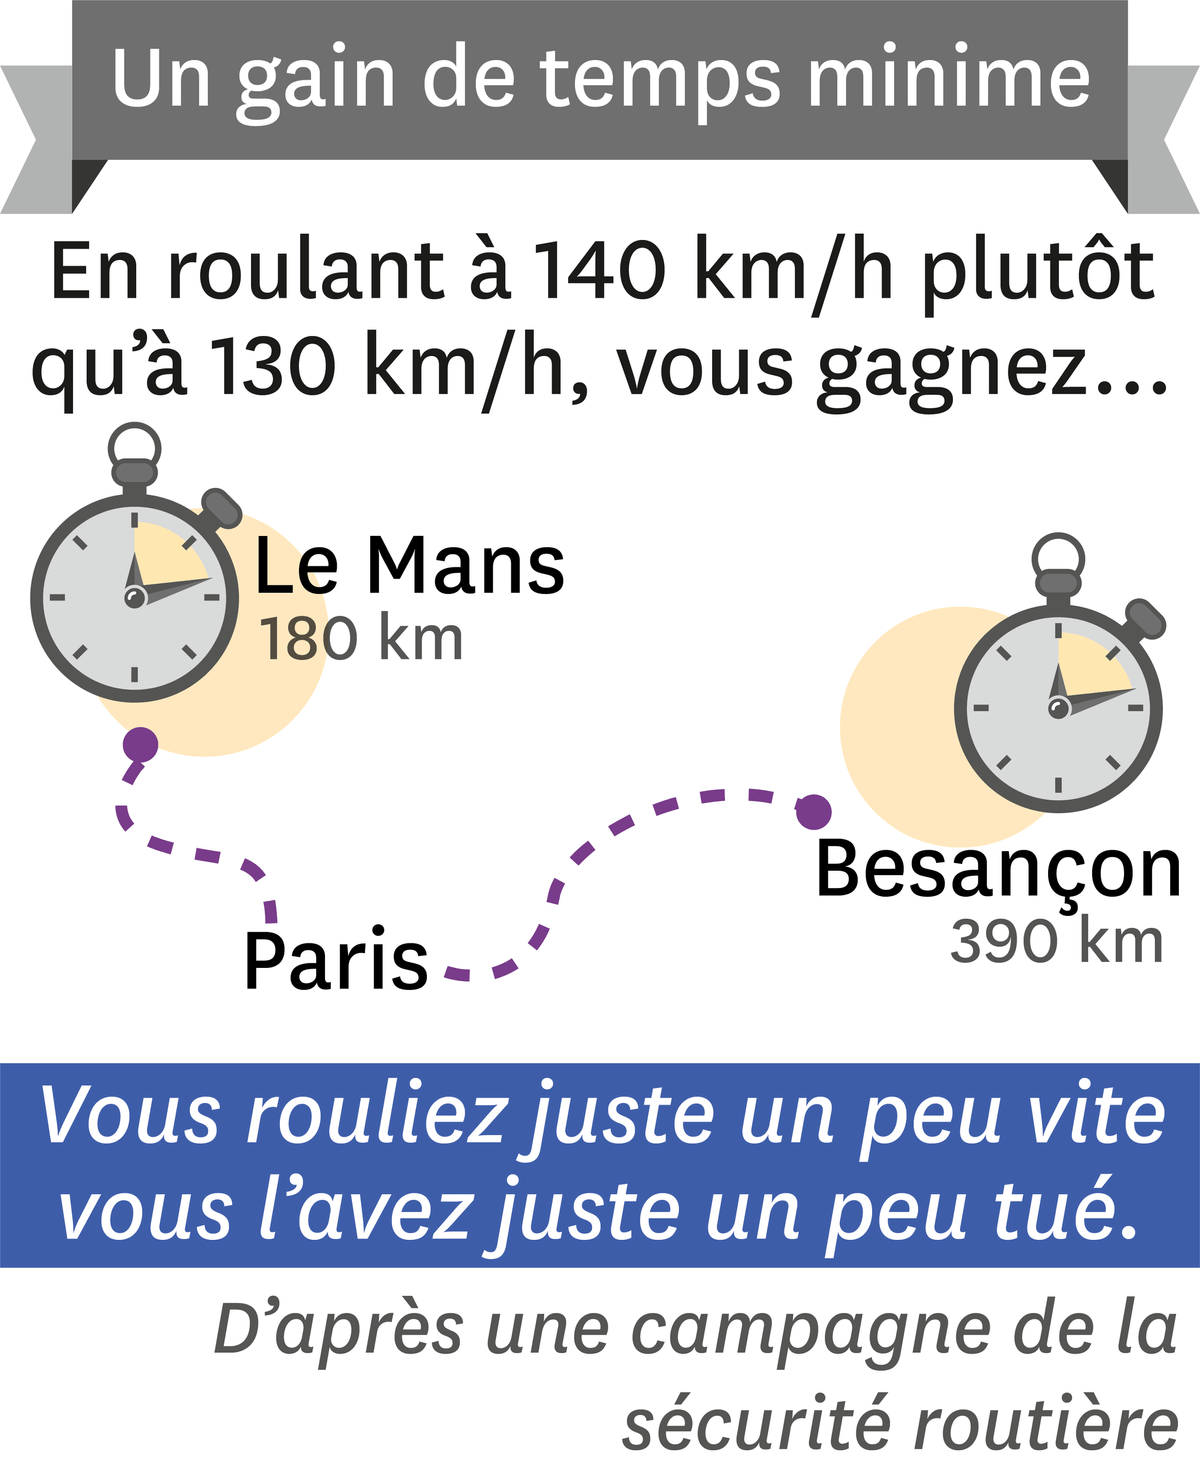 Le Mans - Paris - Besançon.